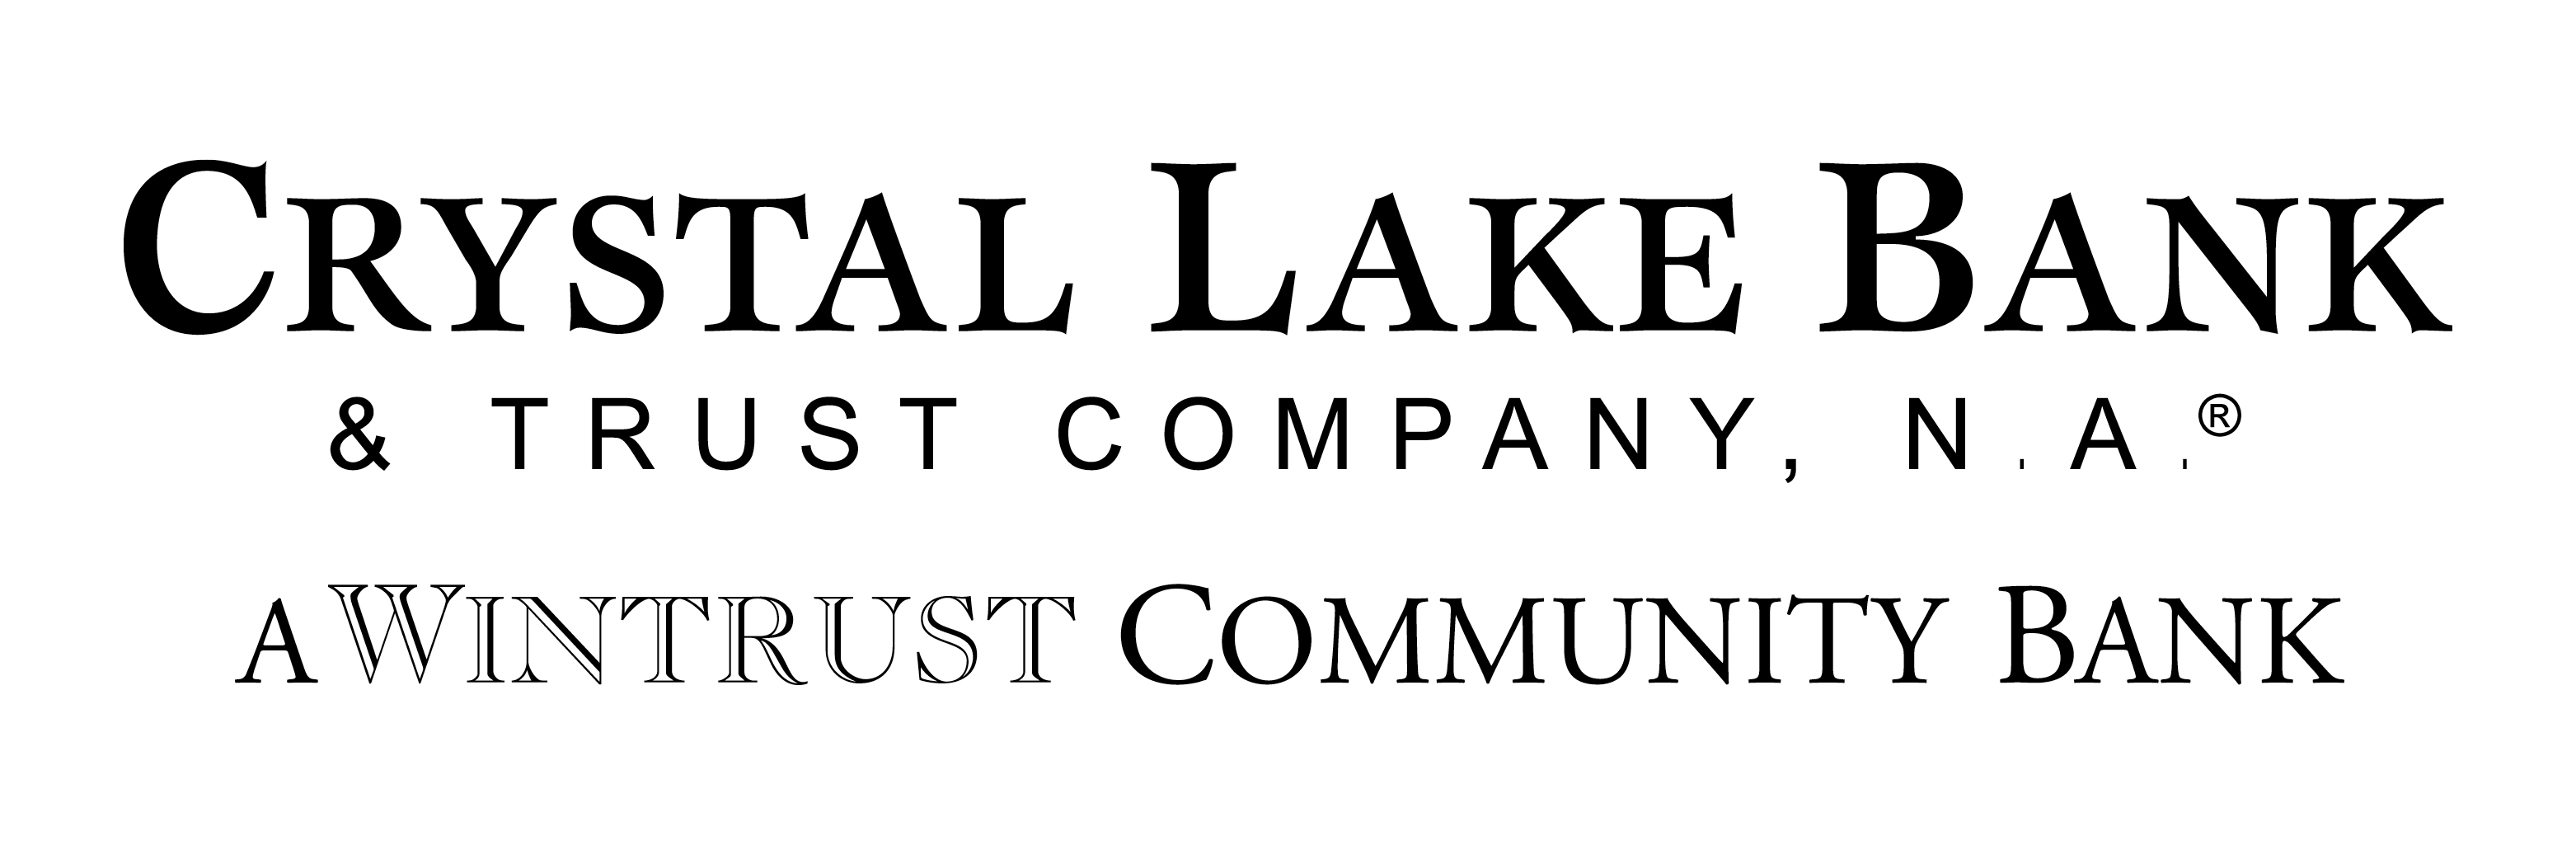 Crystal Lake Bank